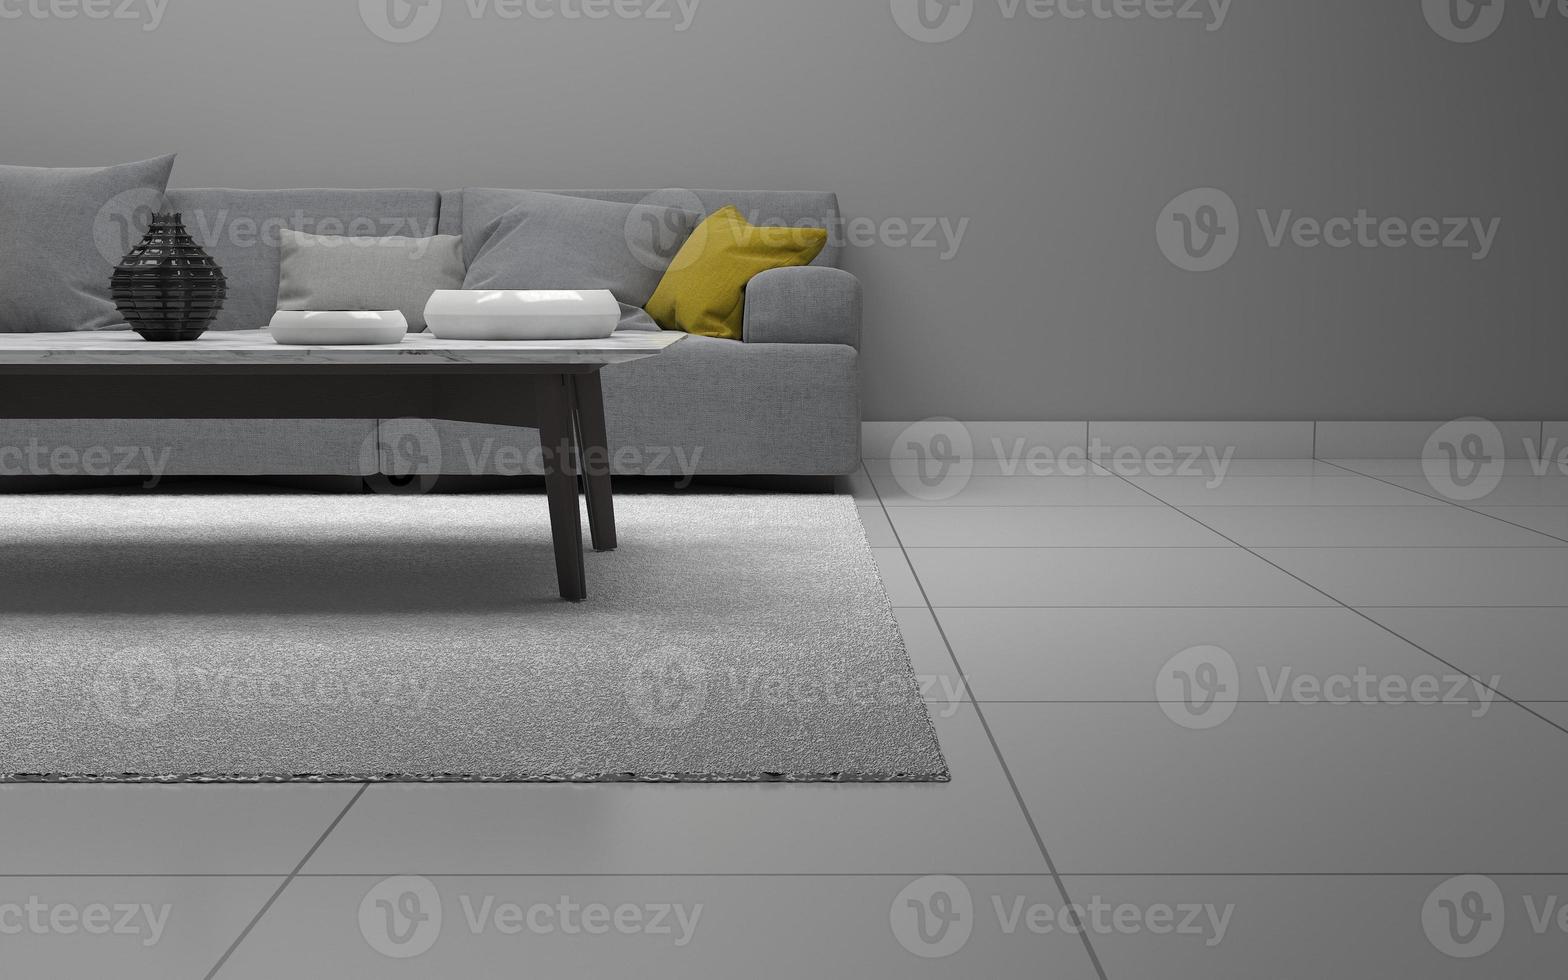 3d reso del soggiorno moderno interno con divano - divano e tavolo realistico mockup foto